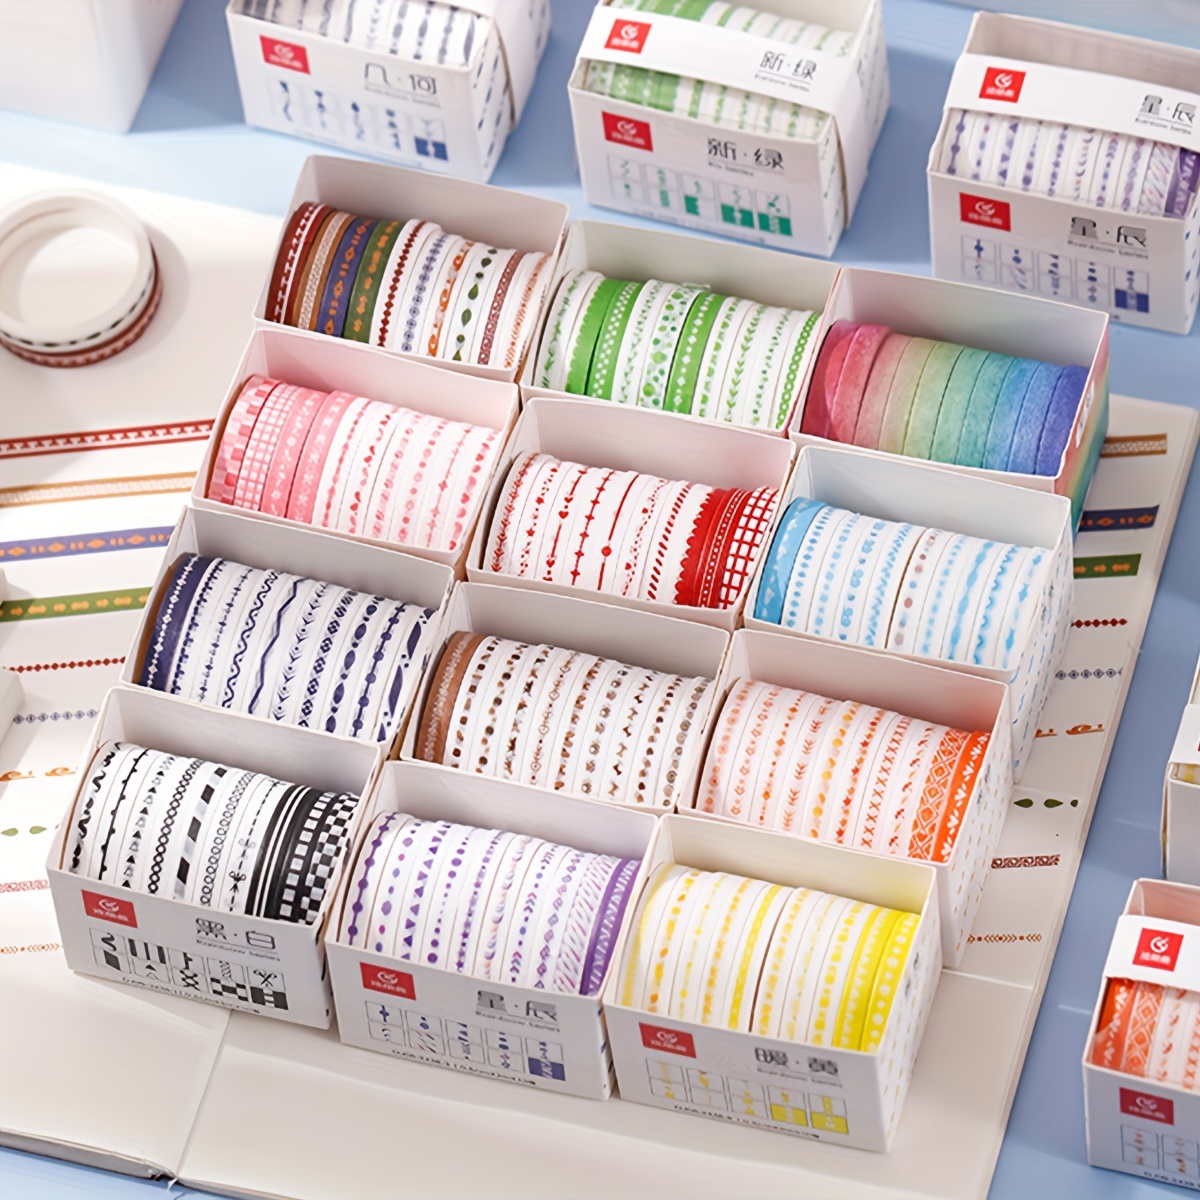 Juego de 20 rollos de cinta adhesiva washi con purpurina delgada, paquete  de cintas adhesivas decorativas coloridas para artes, manualidades, diarios